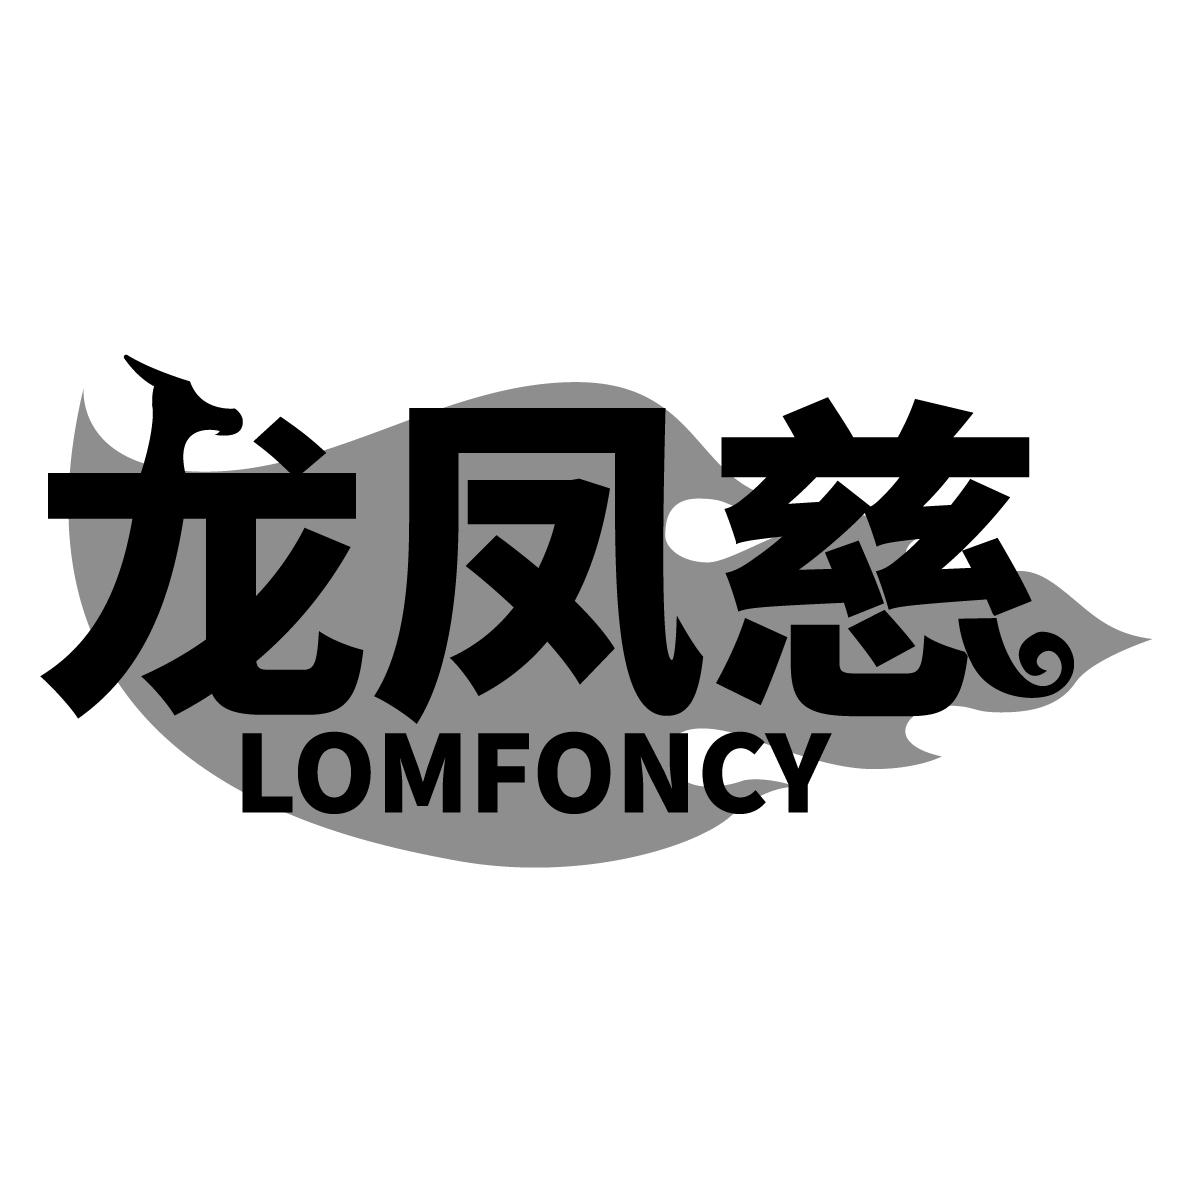  LOMFONCY